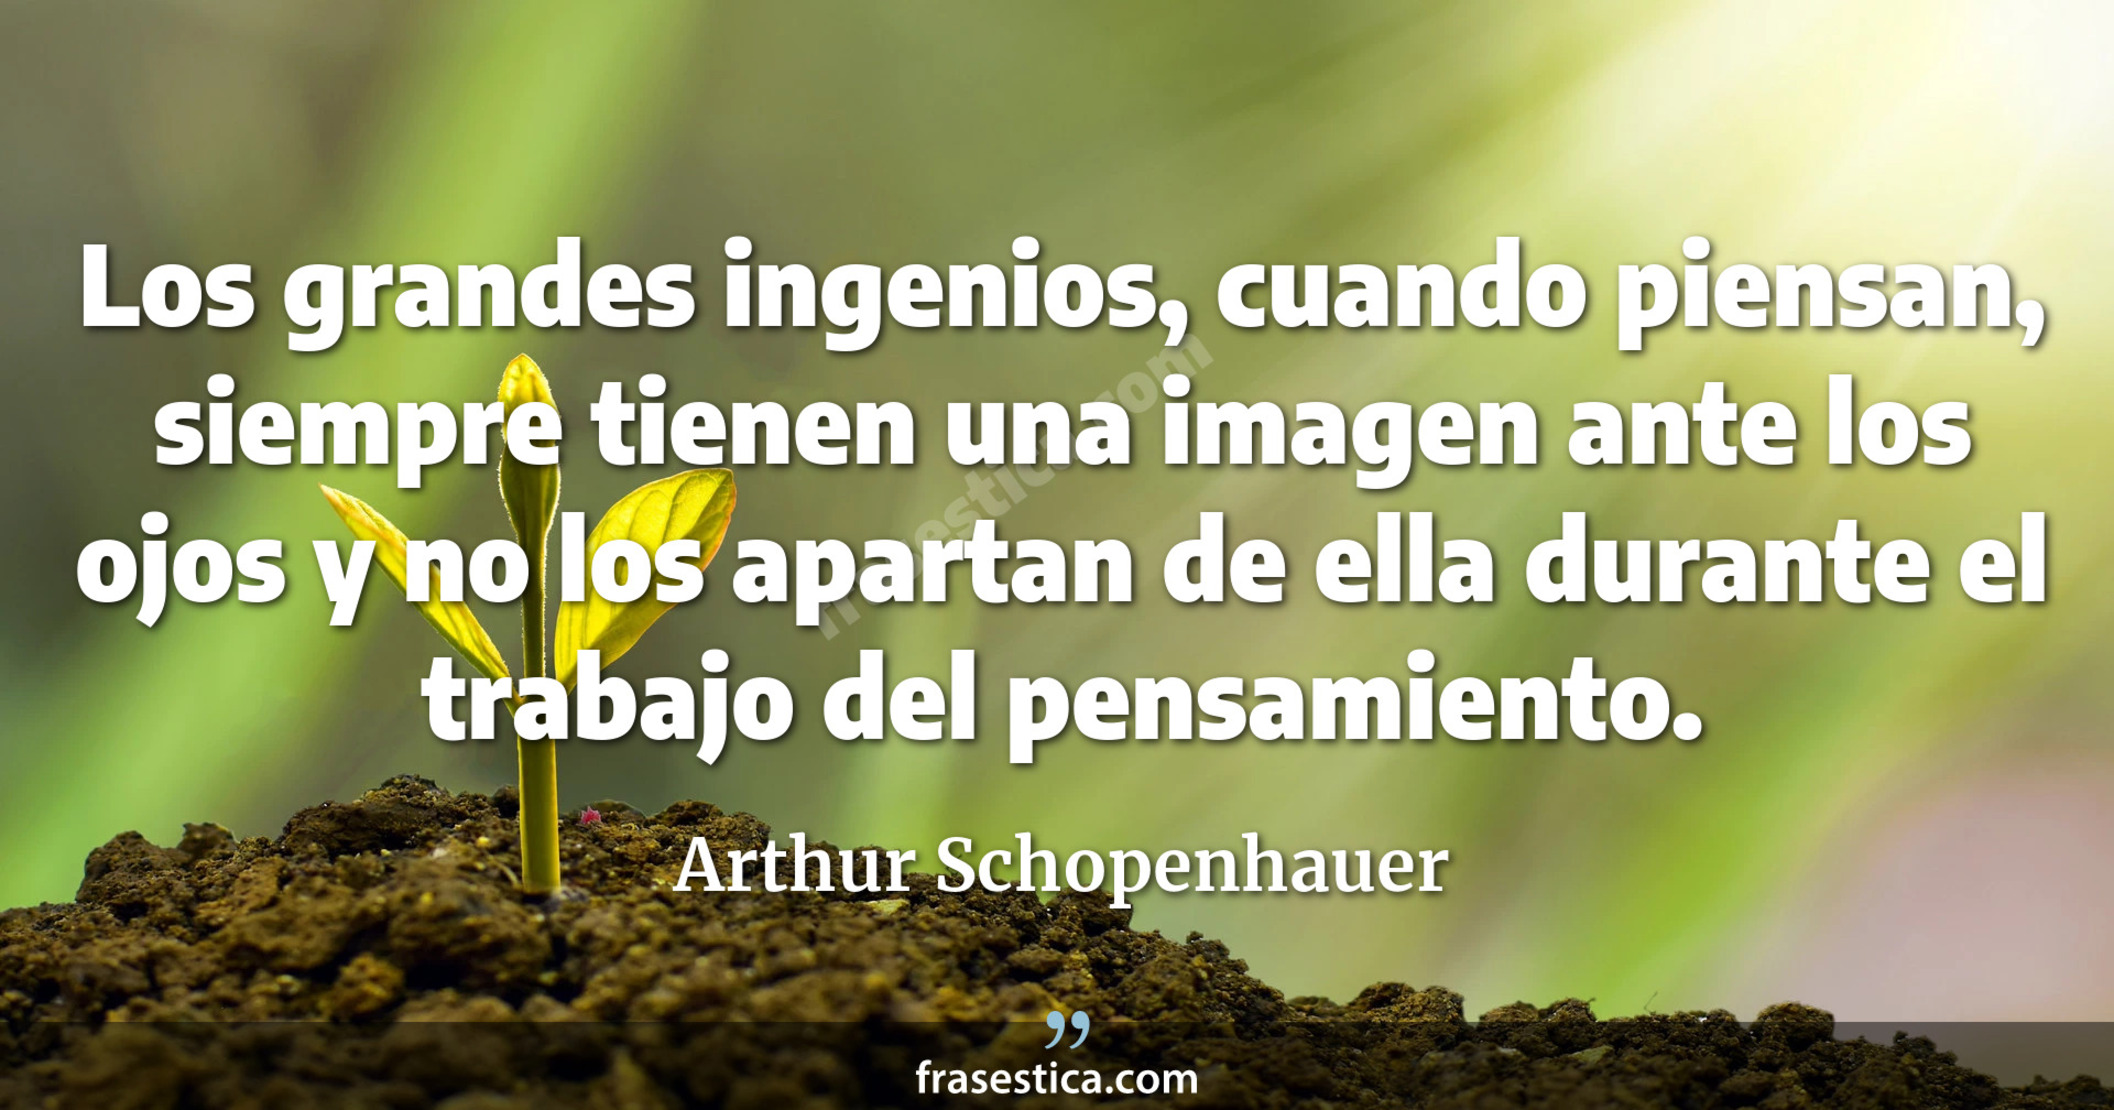 Los grandes ingenios, cuando piensan, siempre tienen una imagen ante los ojos y no los apartan de ella durante el trabajo del pensamiento. - Arthur Schopenhauer